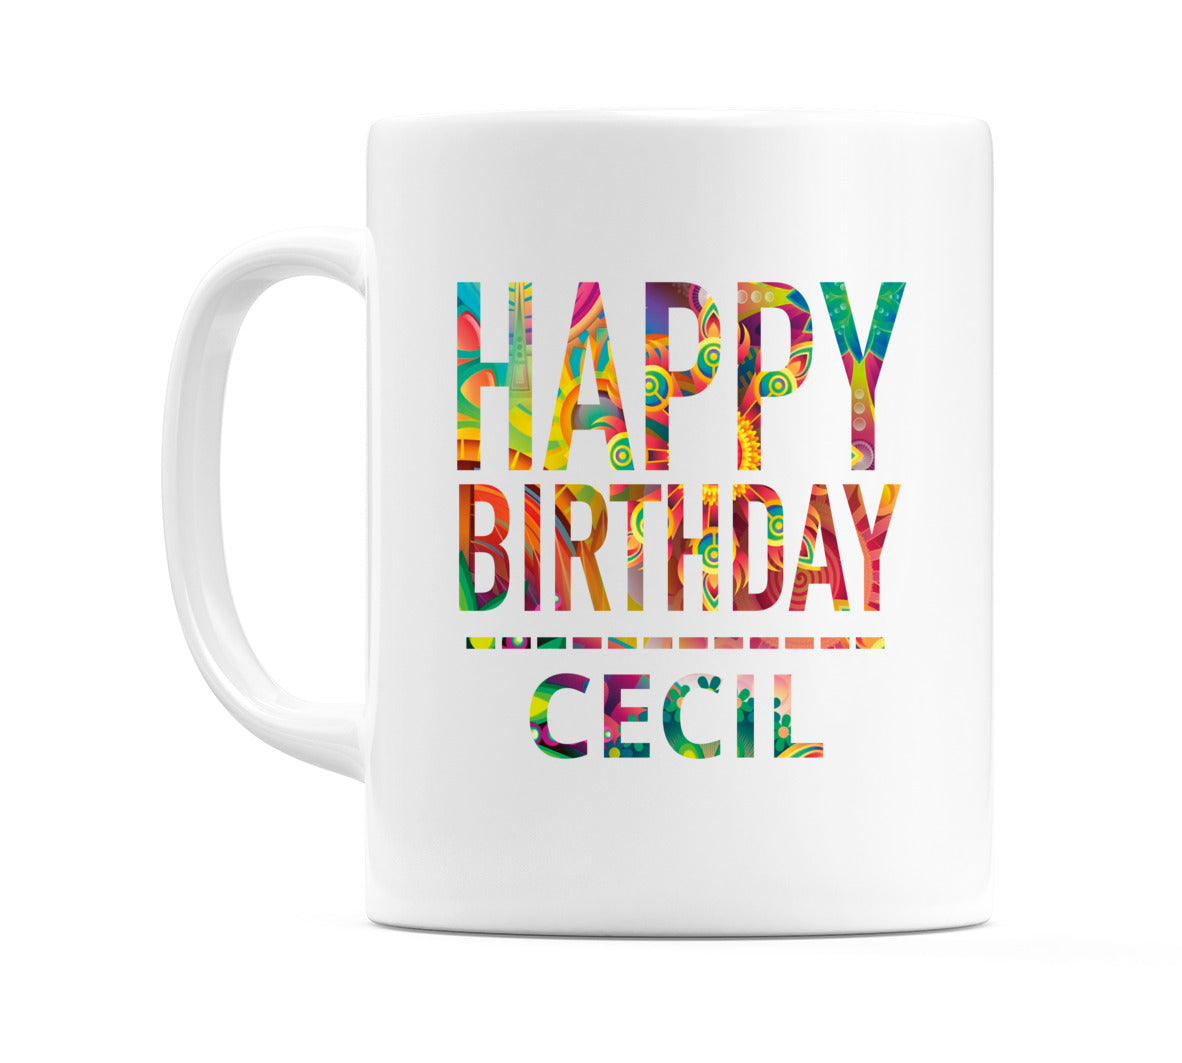 Happy Birthday Cecil (Tie Dye Effect) Mug Cup by WeDoMugs